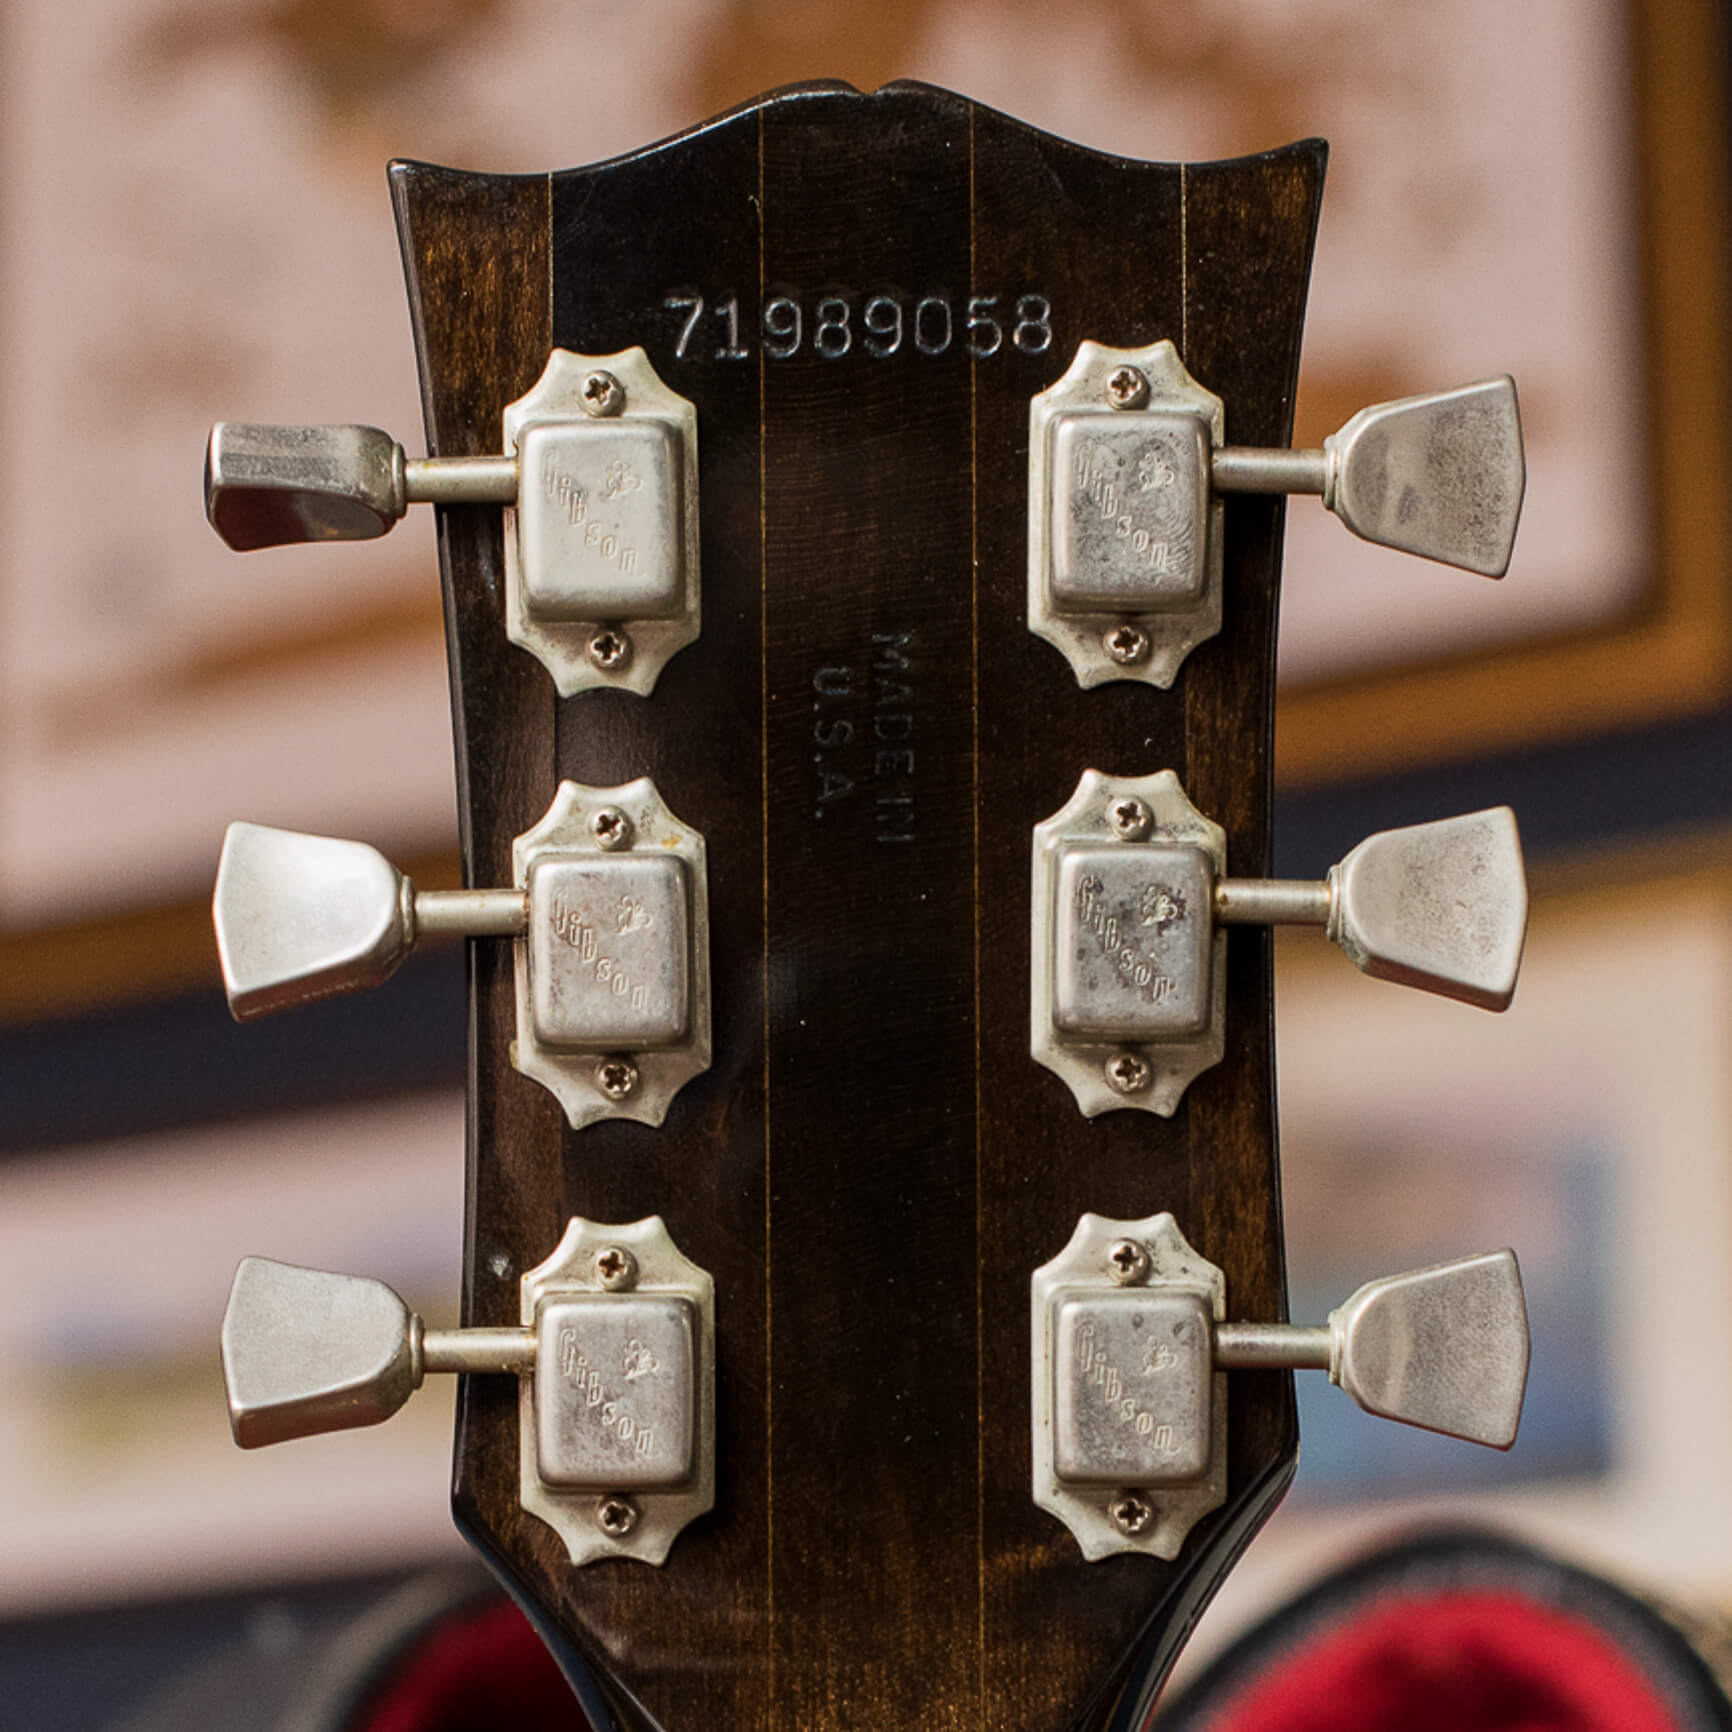 Gibson Serial Number lookup 8 digit